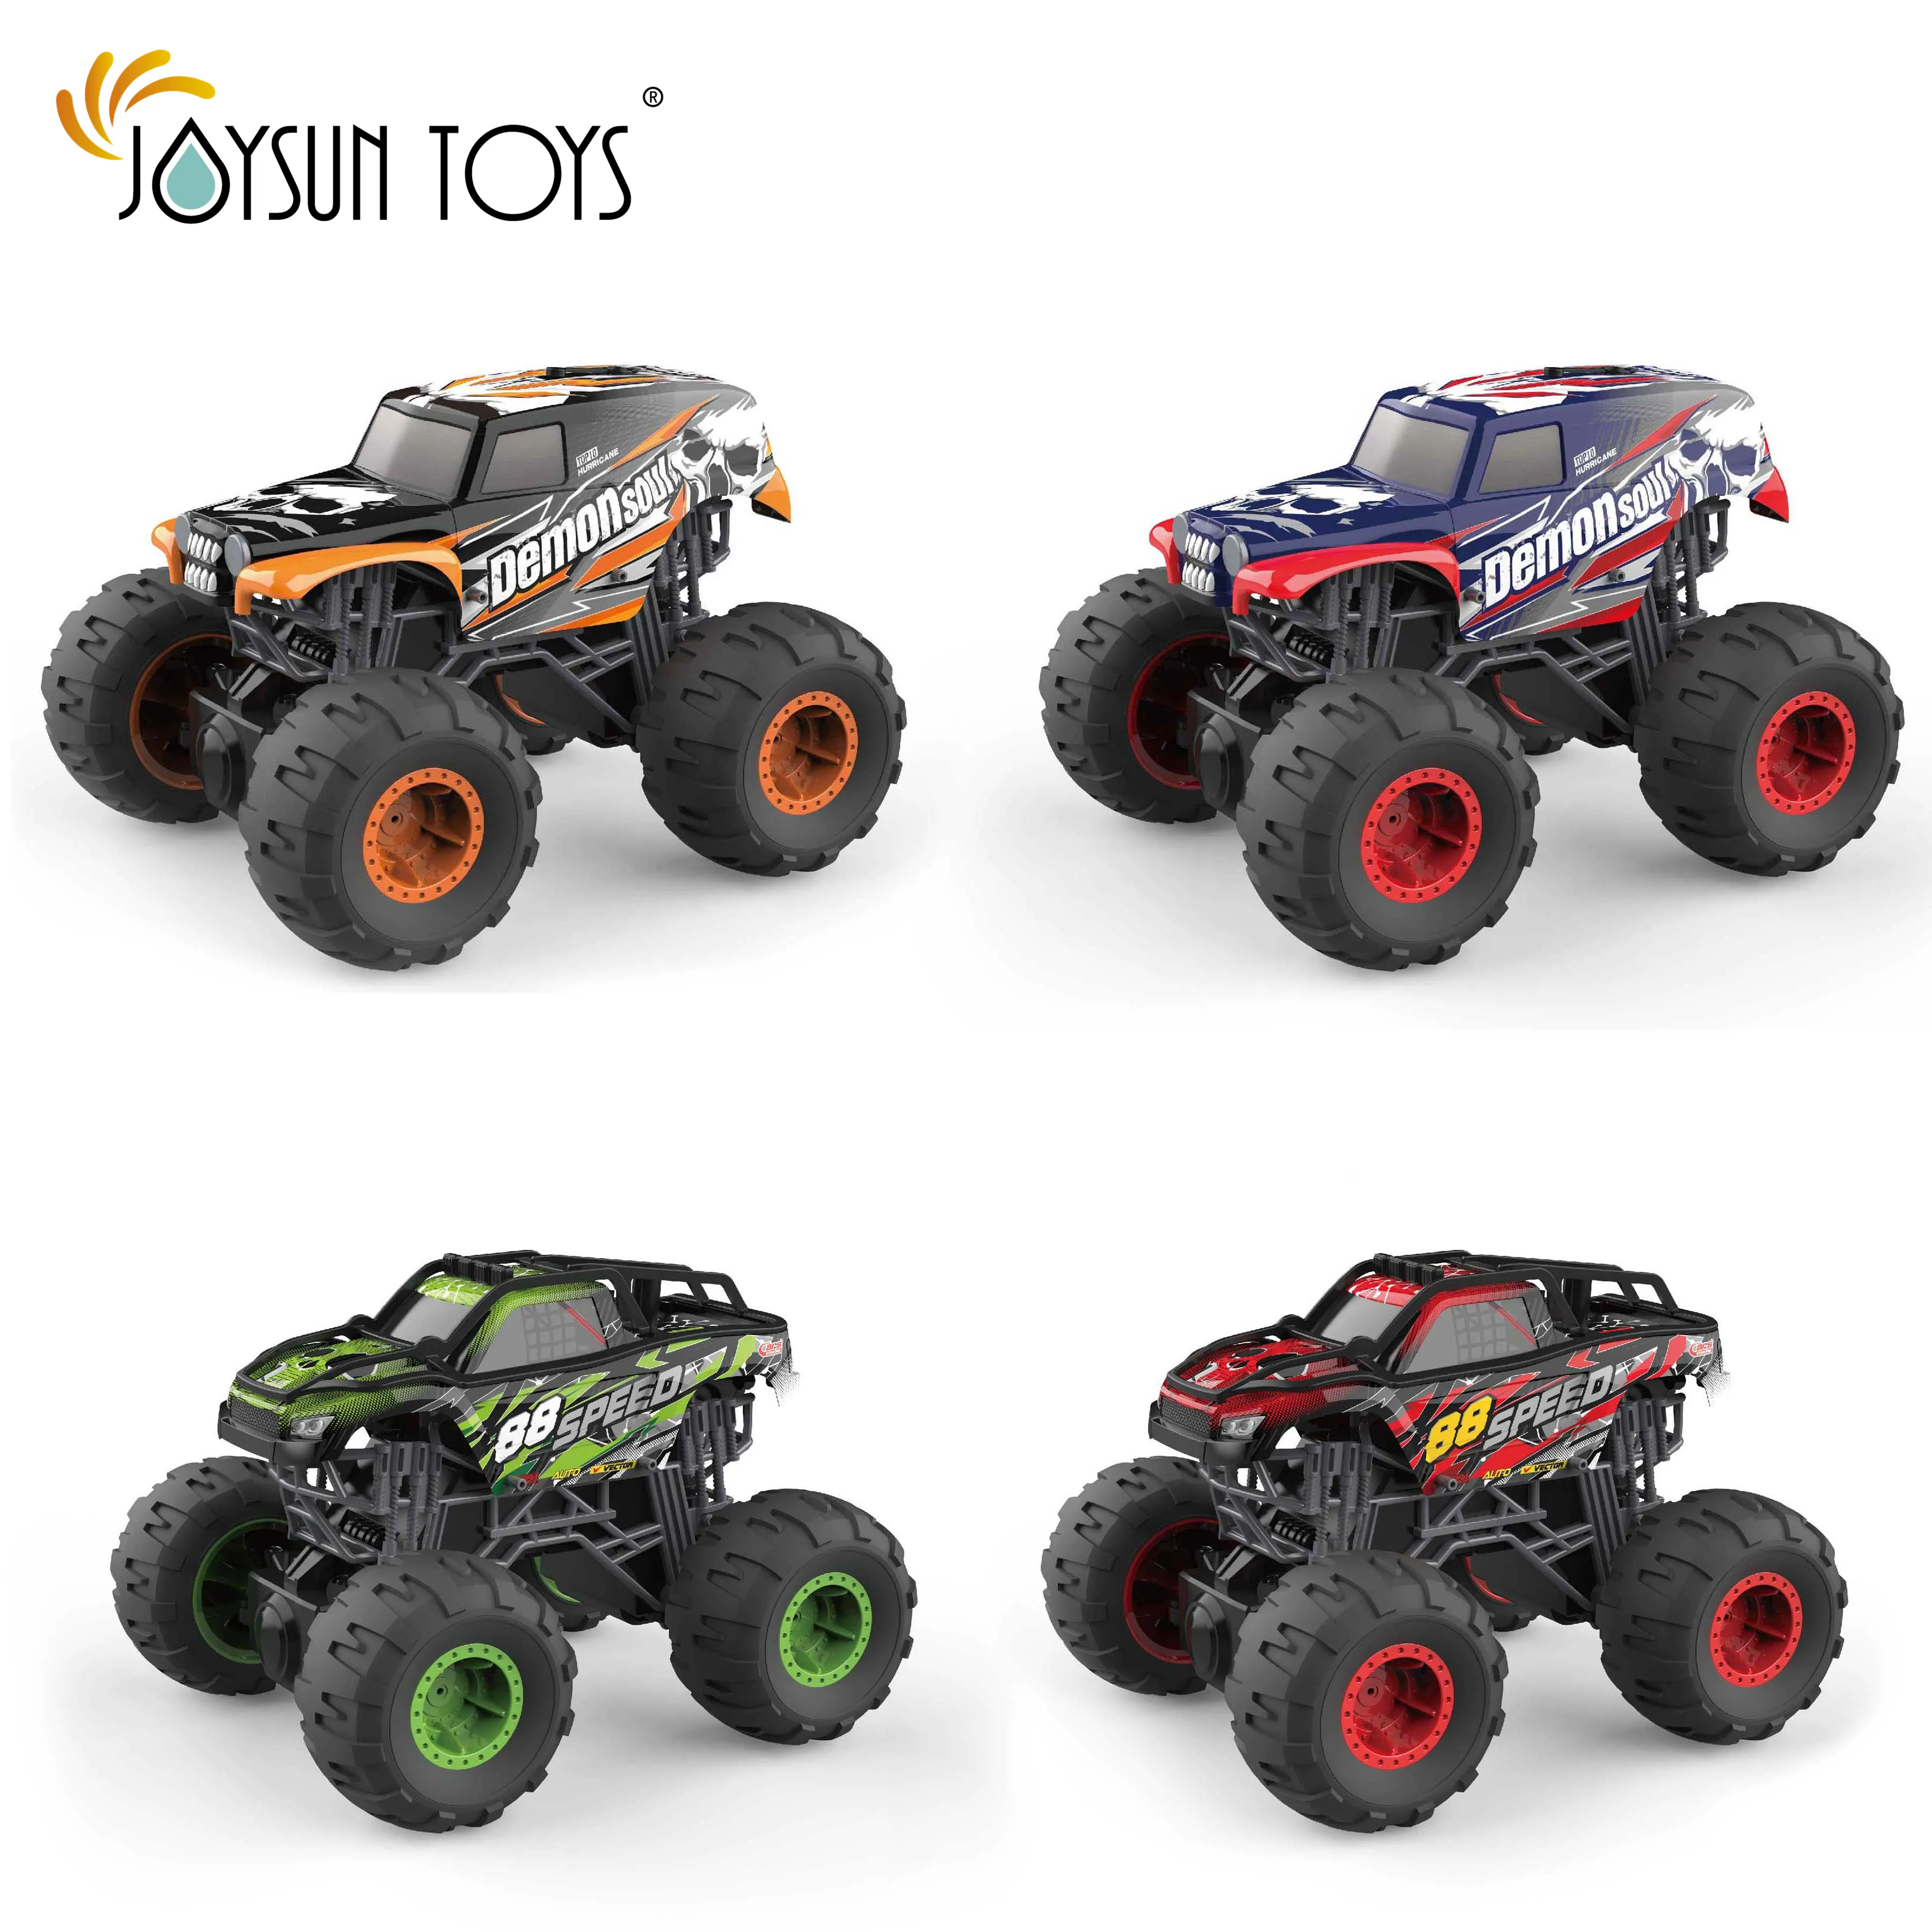 JOYSUN TOYS Remote Control Car Toy for Boys Girls, 2.4 GHz RC Drift Race Car, 1:16 Scale Fast Speedy Crawler Truck